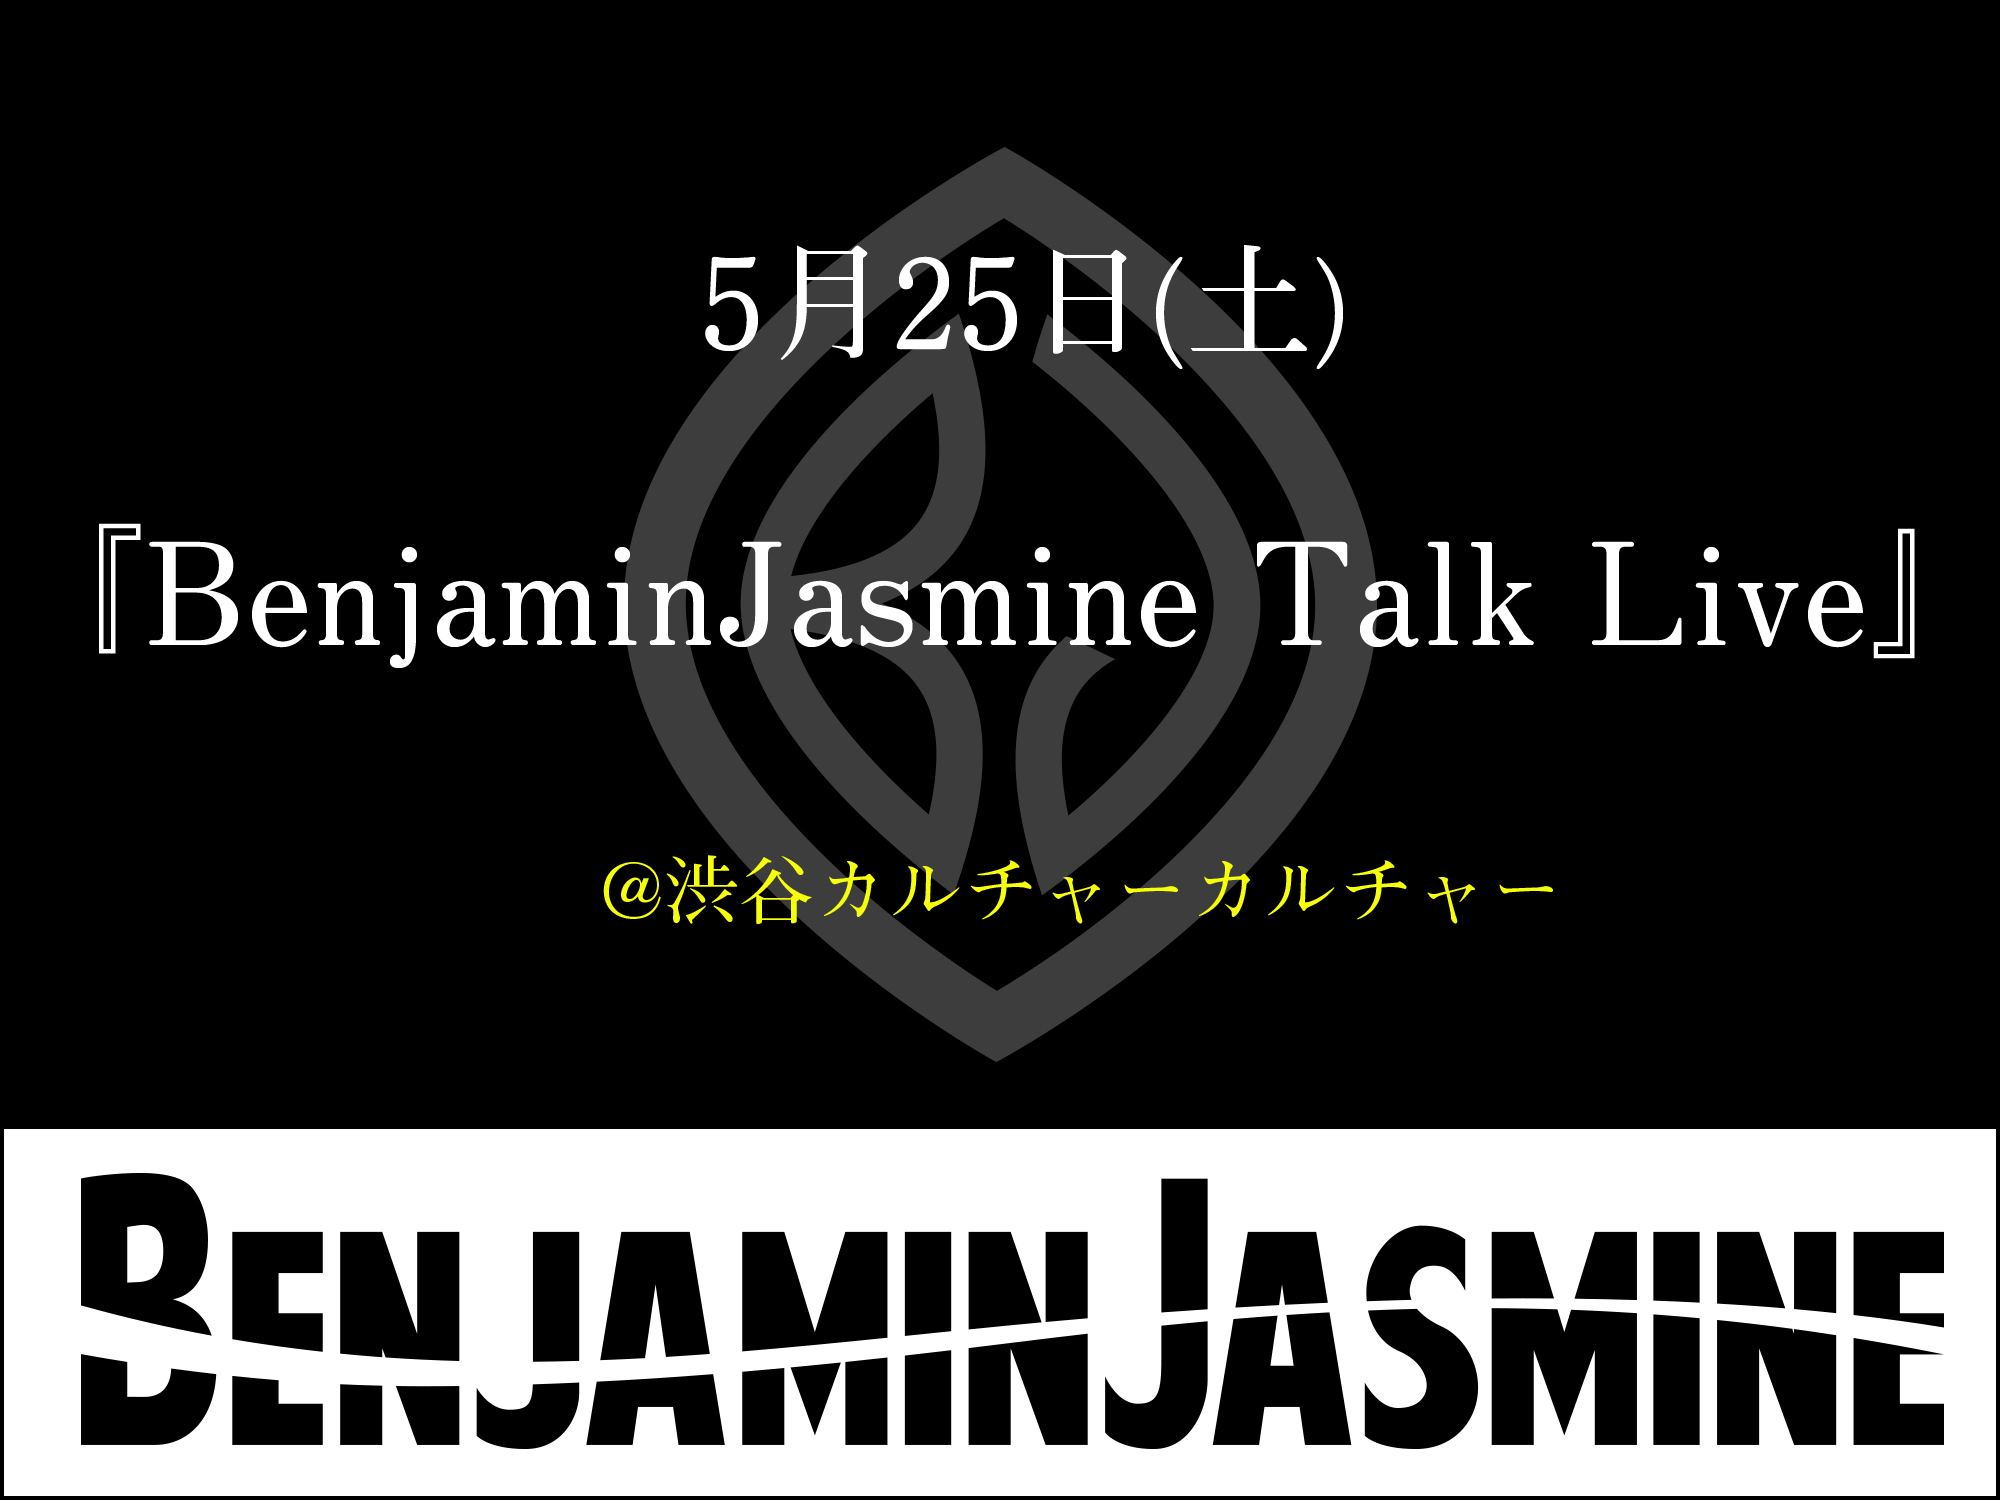 5月25日(土)『BenjaminJasmine Talk Live』